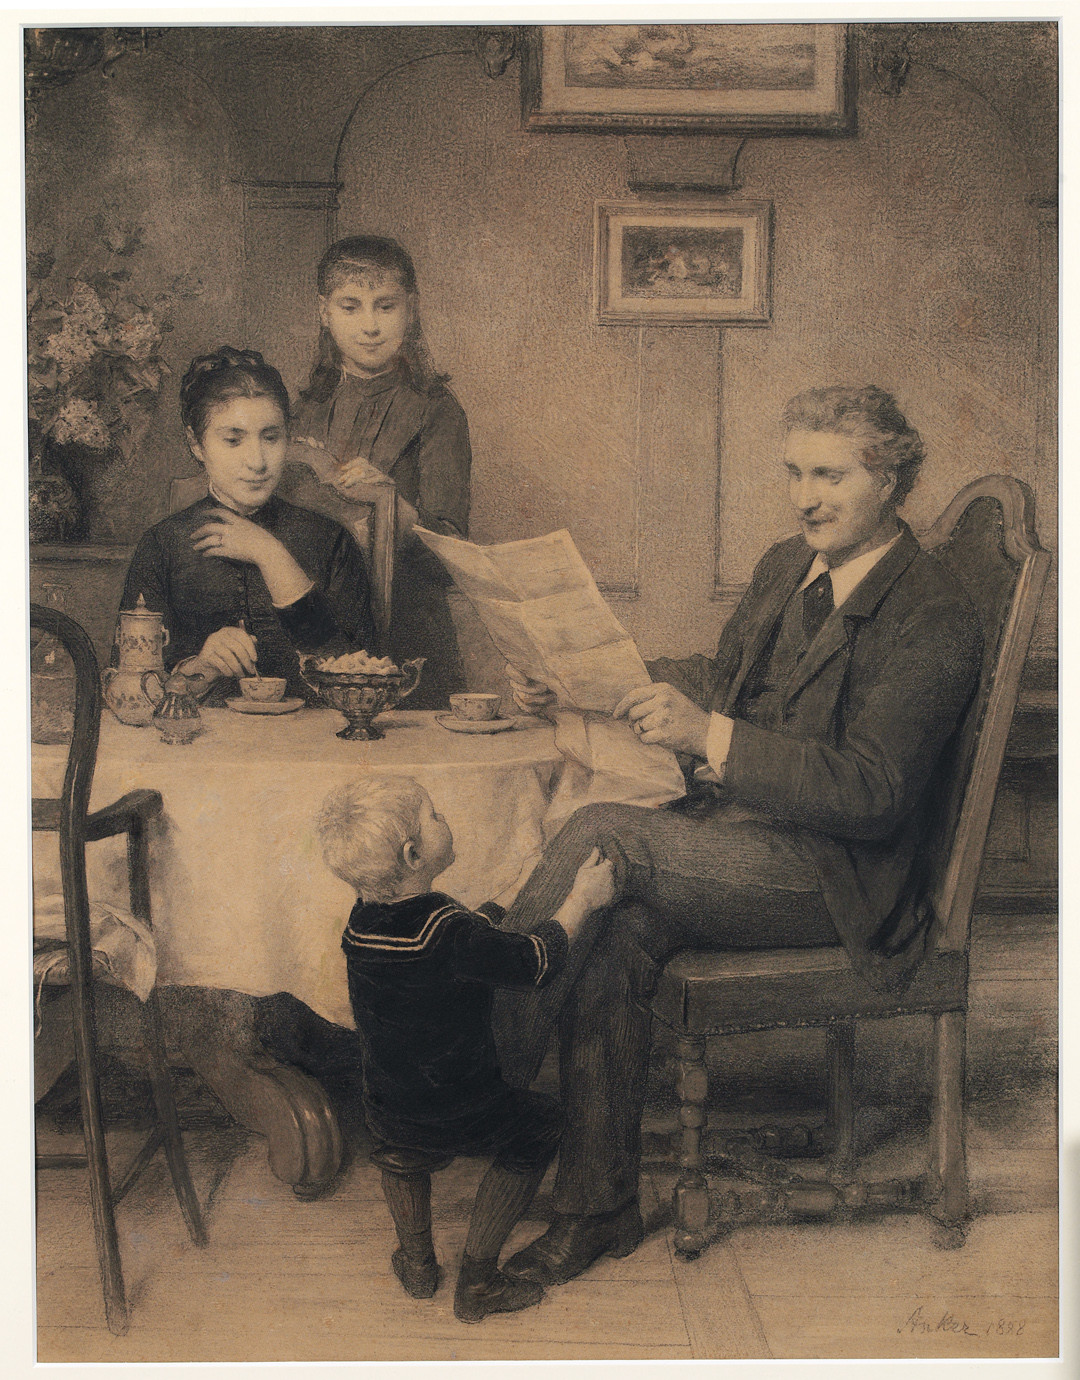 Glöückliche Familöie. 1888, Kohle auf Papier, 64,5 x 51 cm, Kunstmuseum Bern, Schenkung Stiftung Gemäldesammlung Emil Bretschger. 